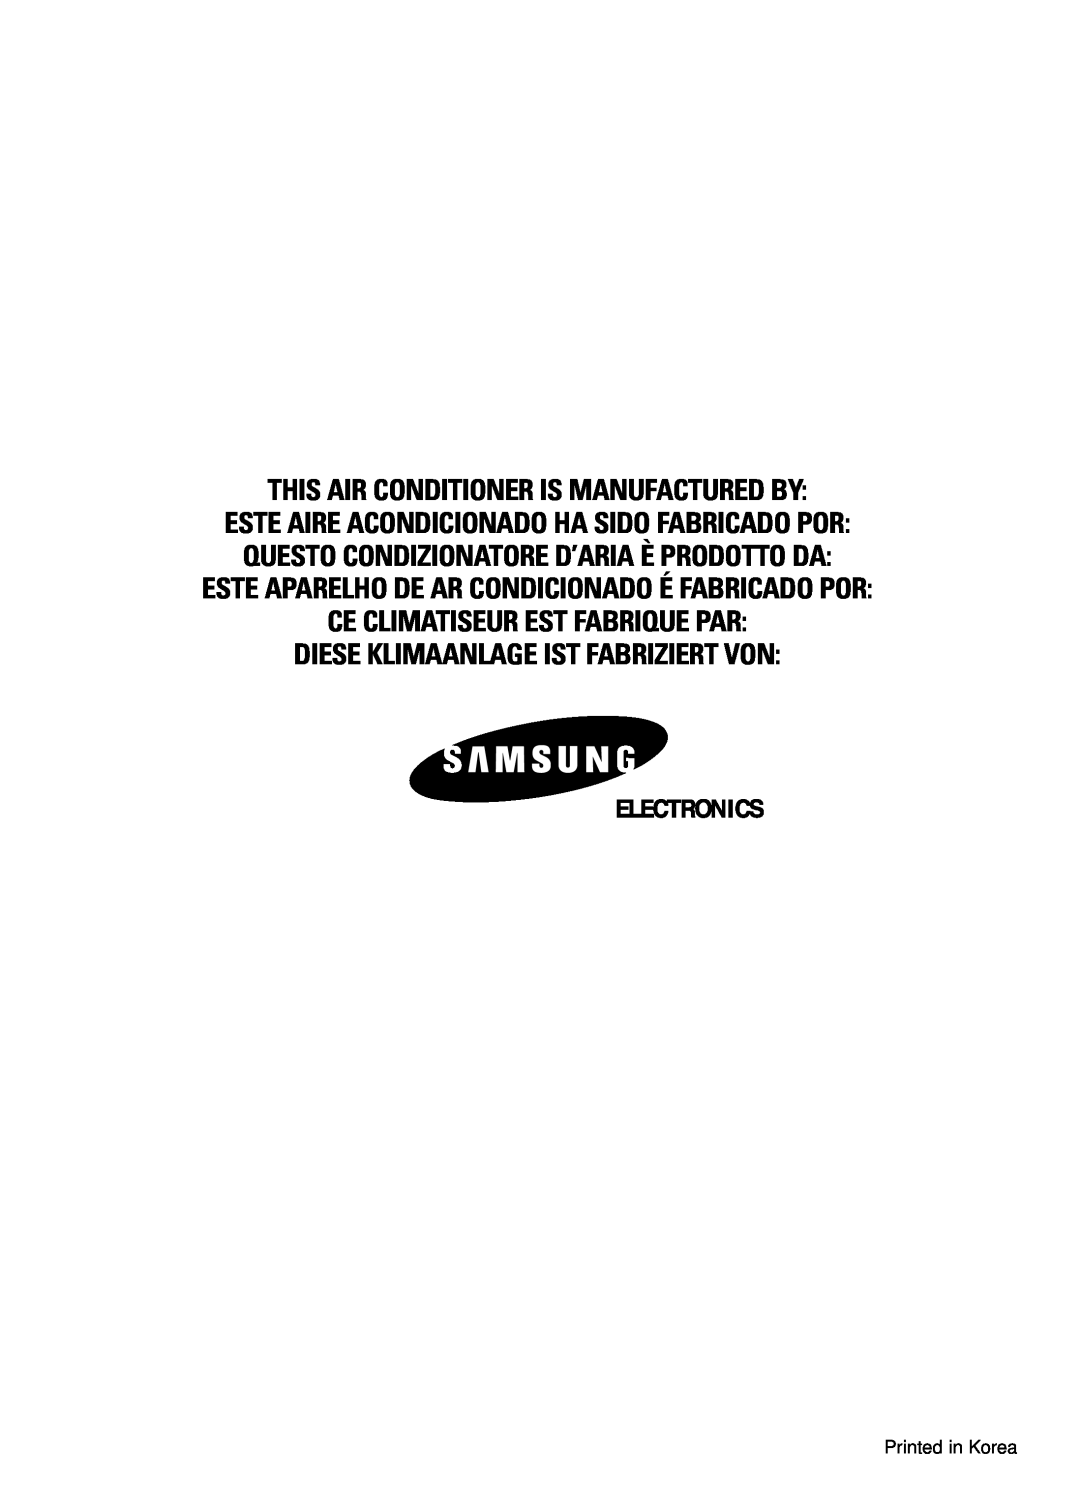 Samsung AQT18A1(A2)QE/B, SH18ZV This Air Conditioner Is Manufactured By, Este Aparelho De Ar Condicionado É Fabricado Por 